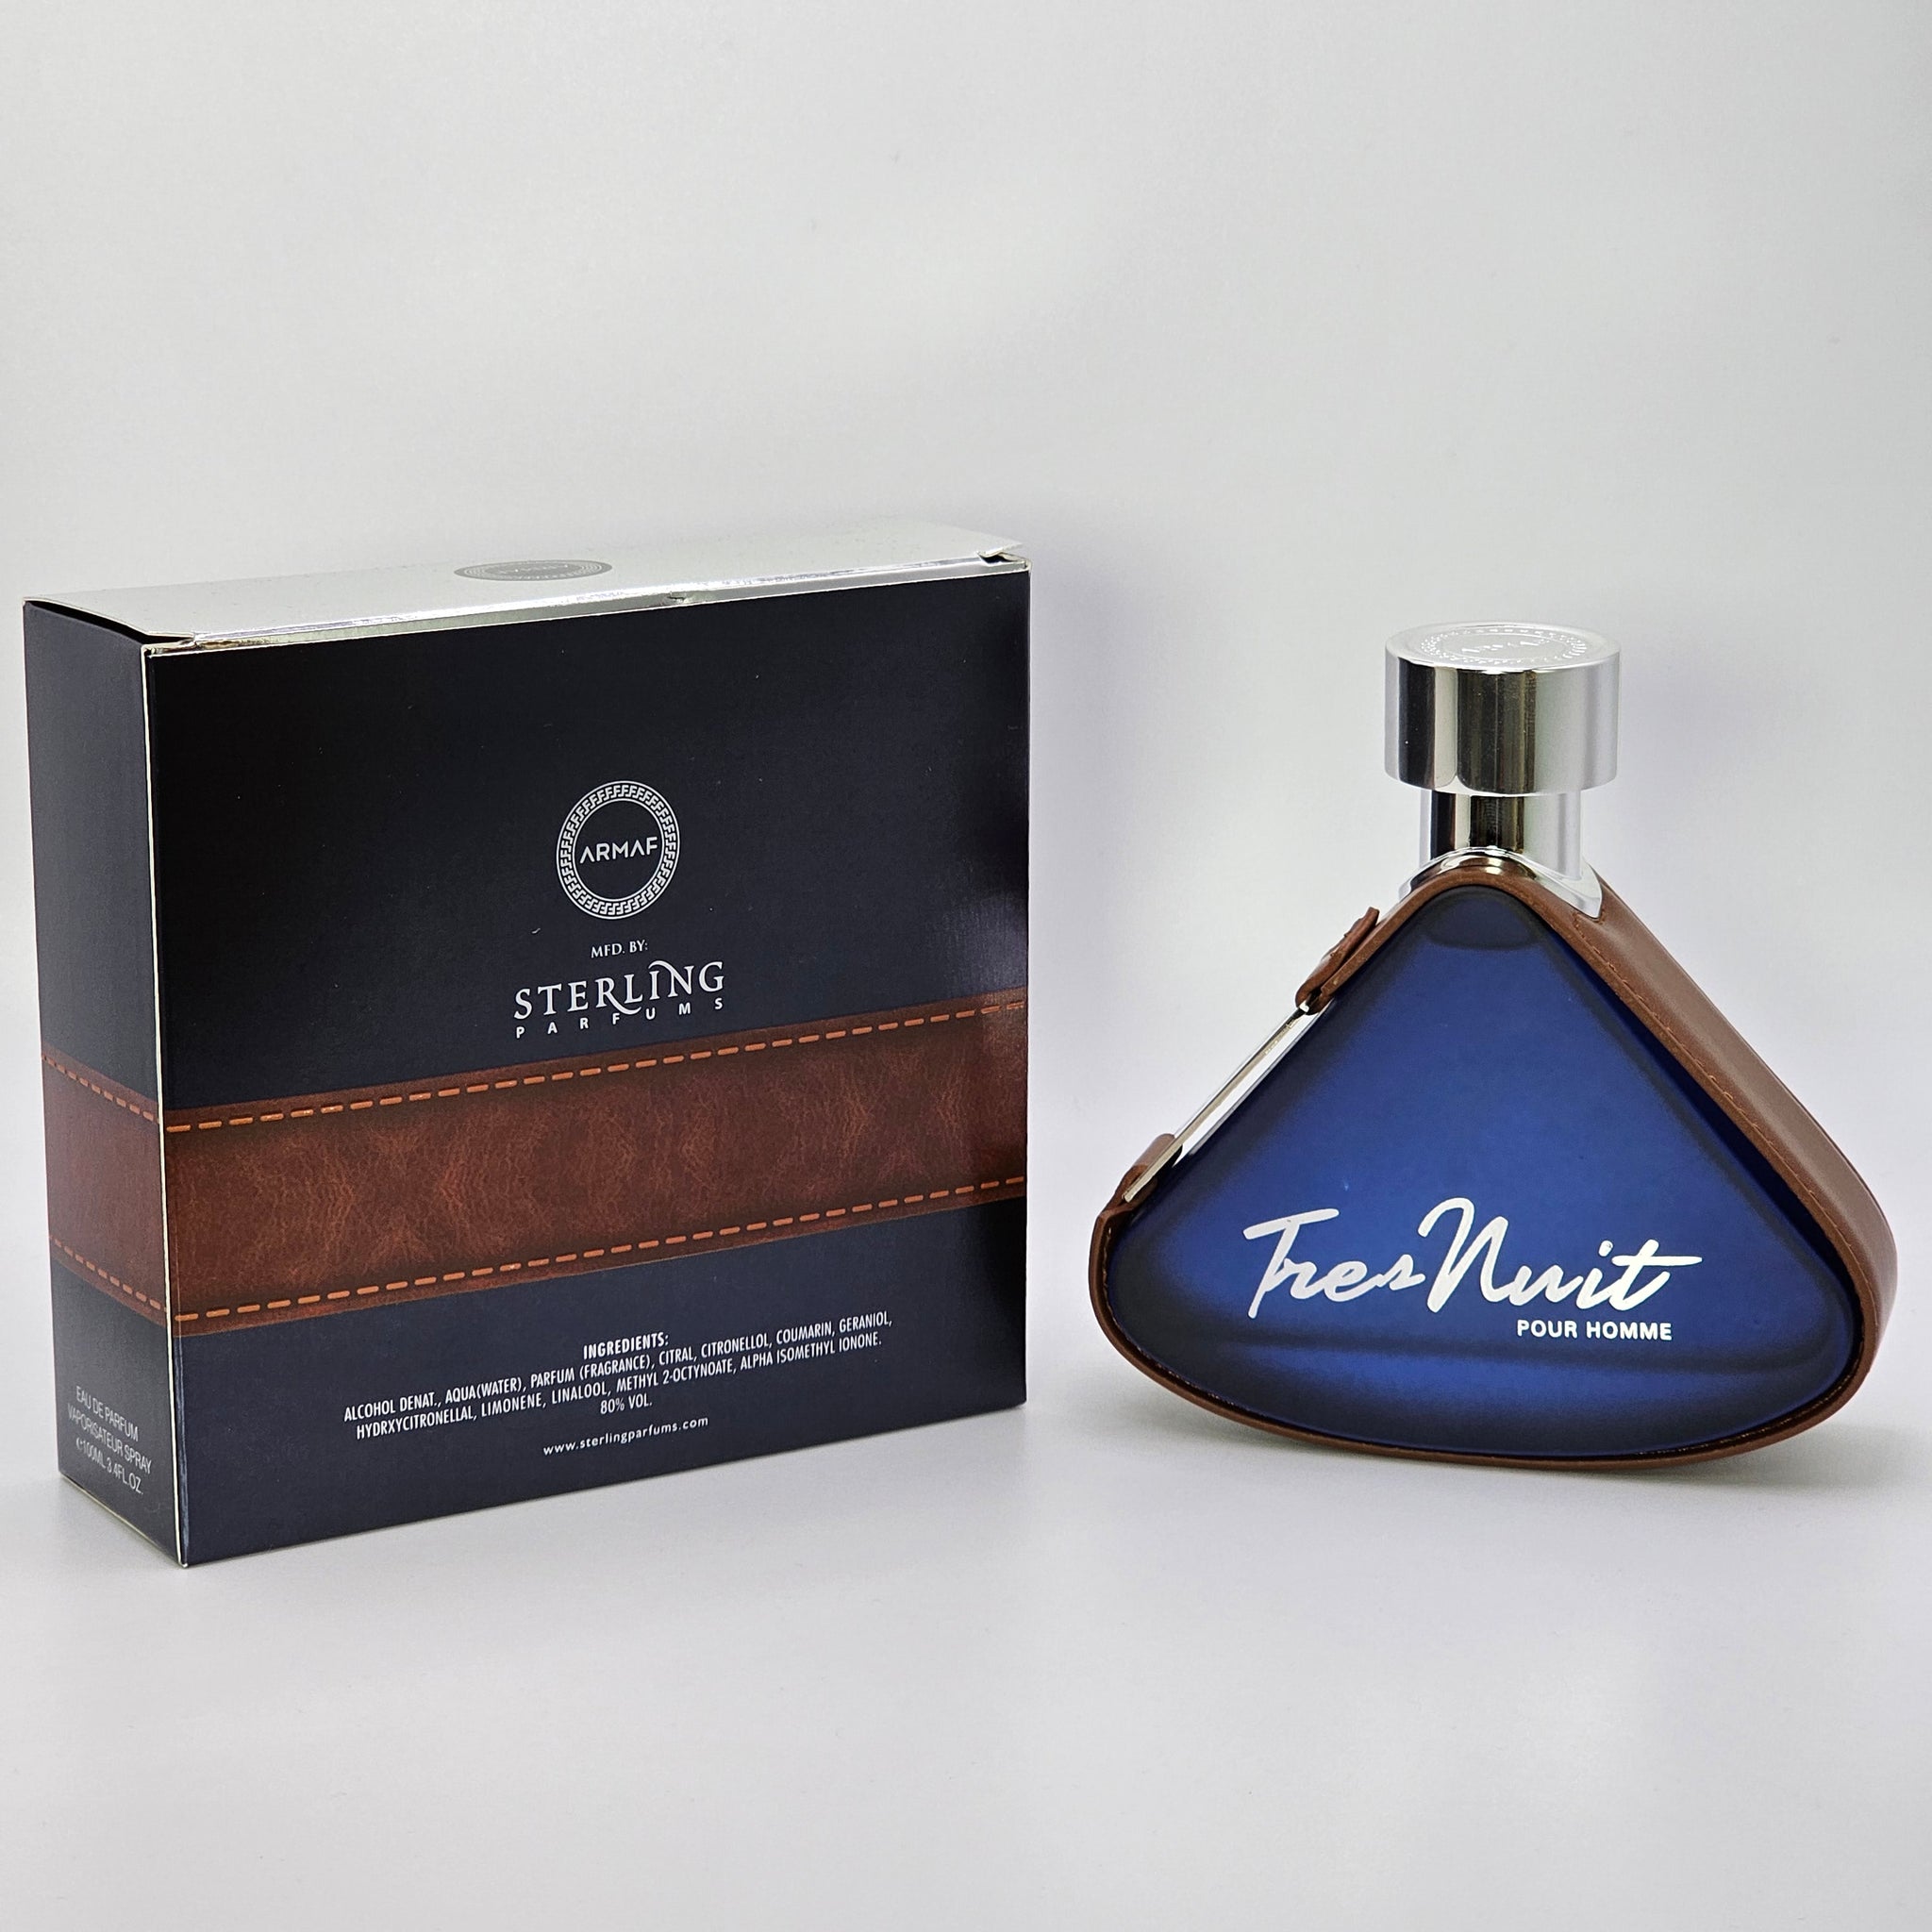 Armaf Tres Nuit Pour Homme Eau De Parfum 3.4 Oz - Timeless Fragrance for Men